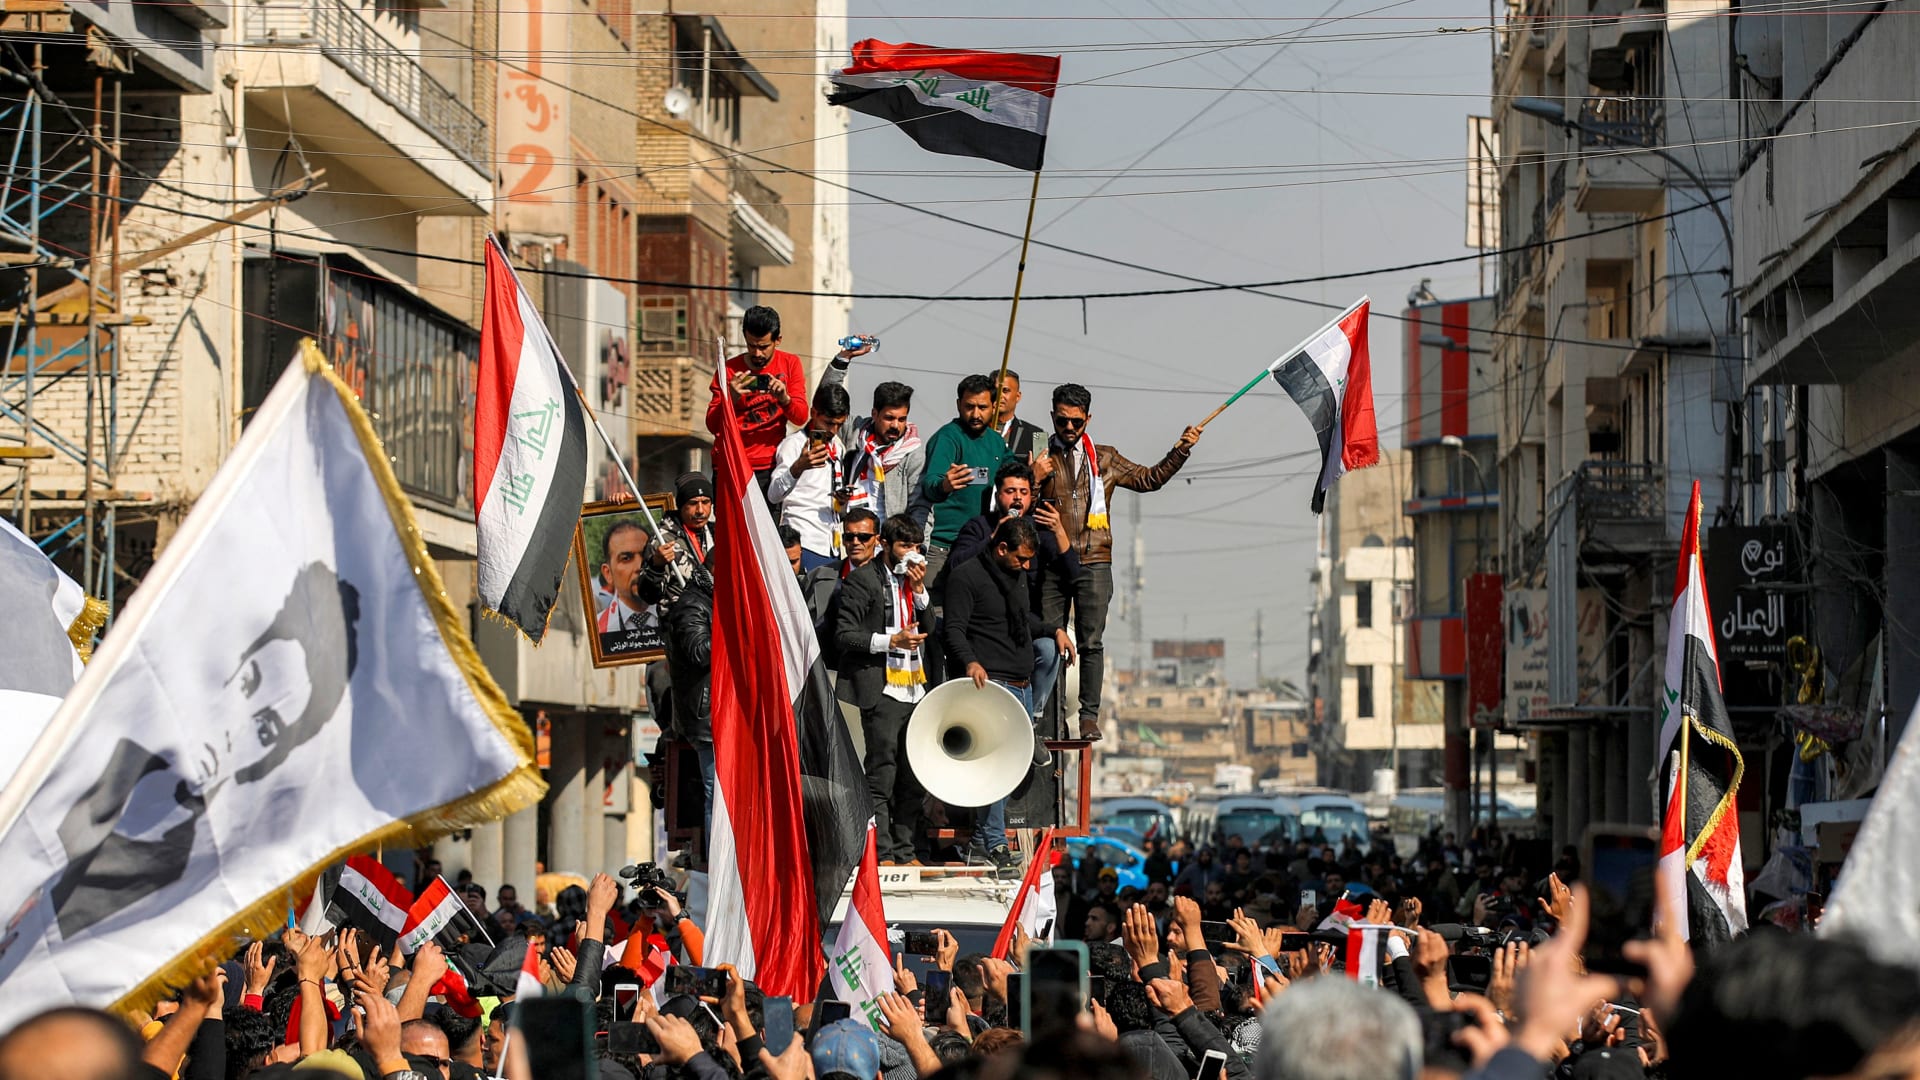 عراقيون يحتجون في بغداد يوم 25 يناير/كانون الثاني رفضا لتراجع قيمة الدينار العراقي 